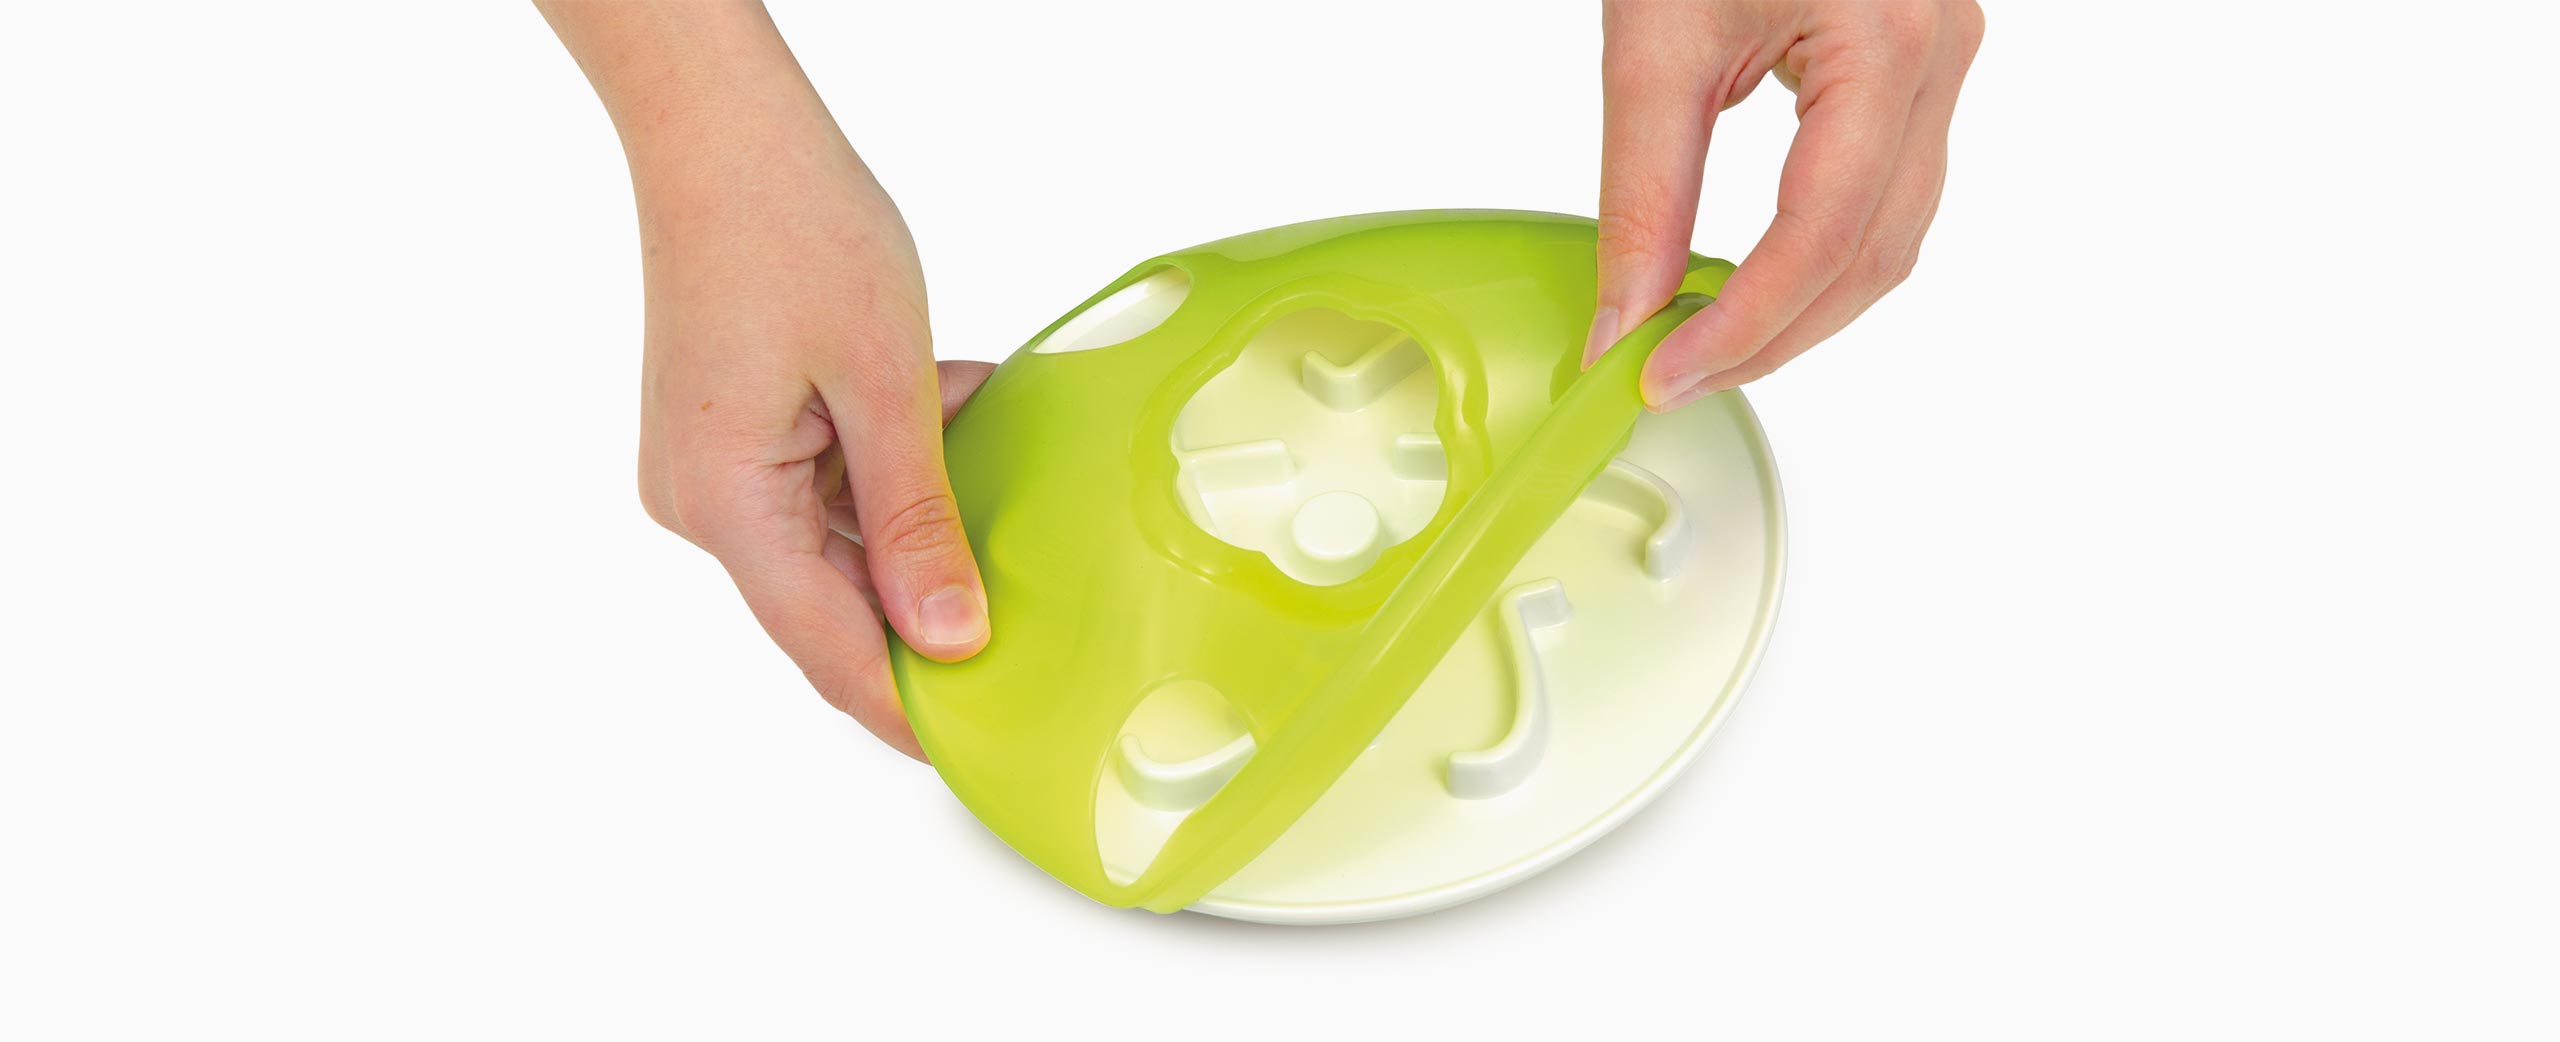 Dessus en silicone amovible pour un nettoyage facile au lave-vaisselle